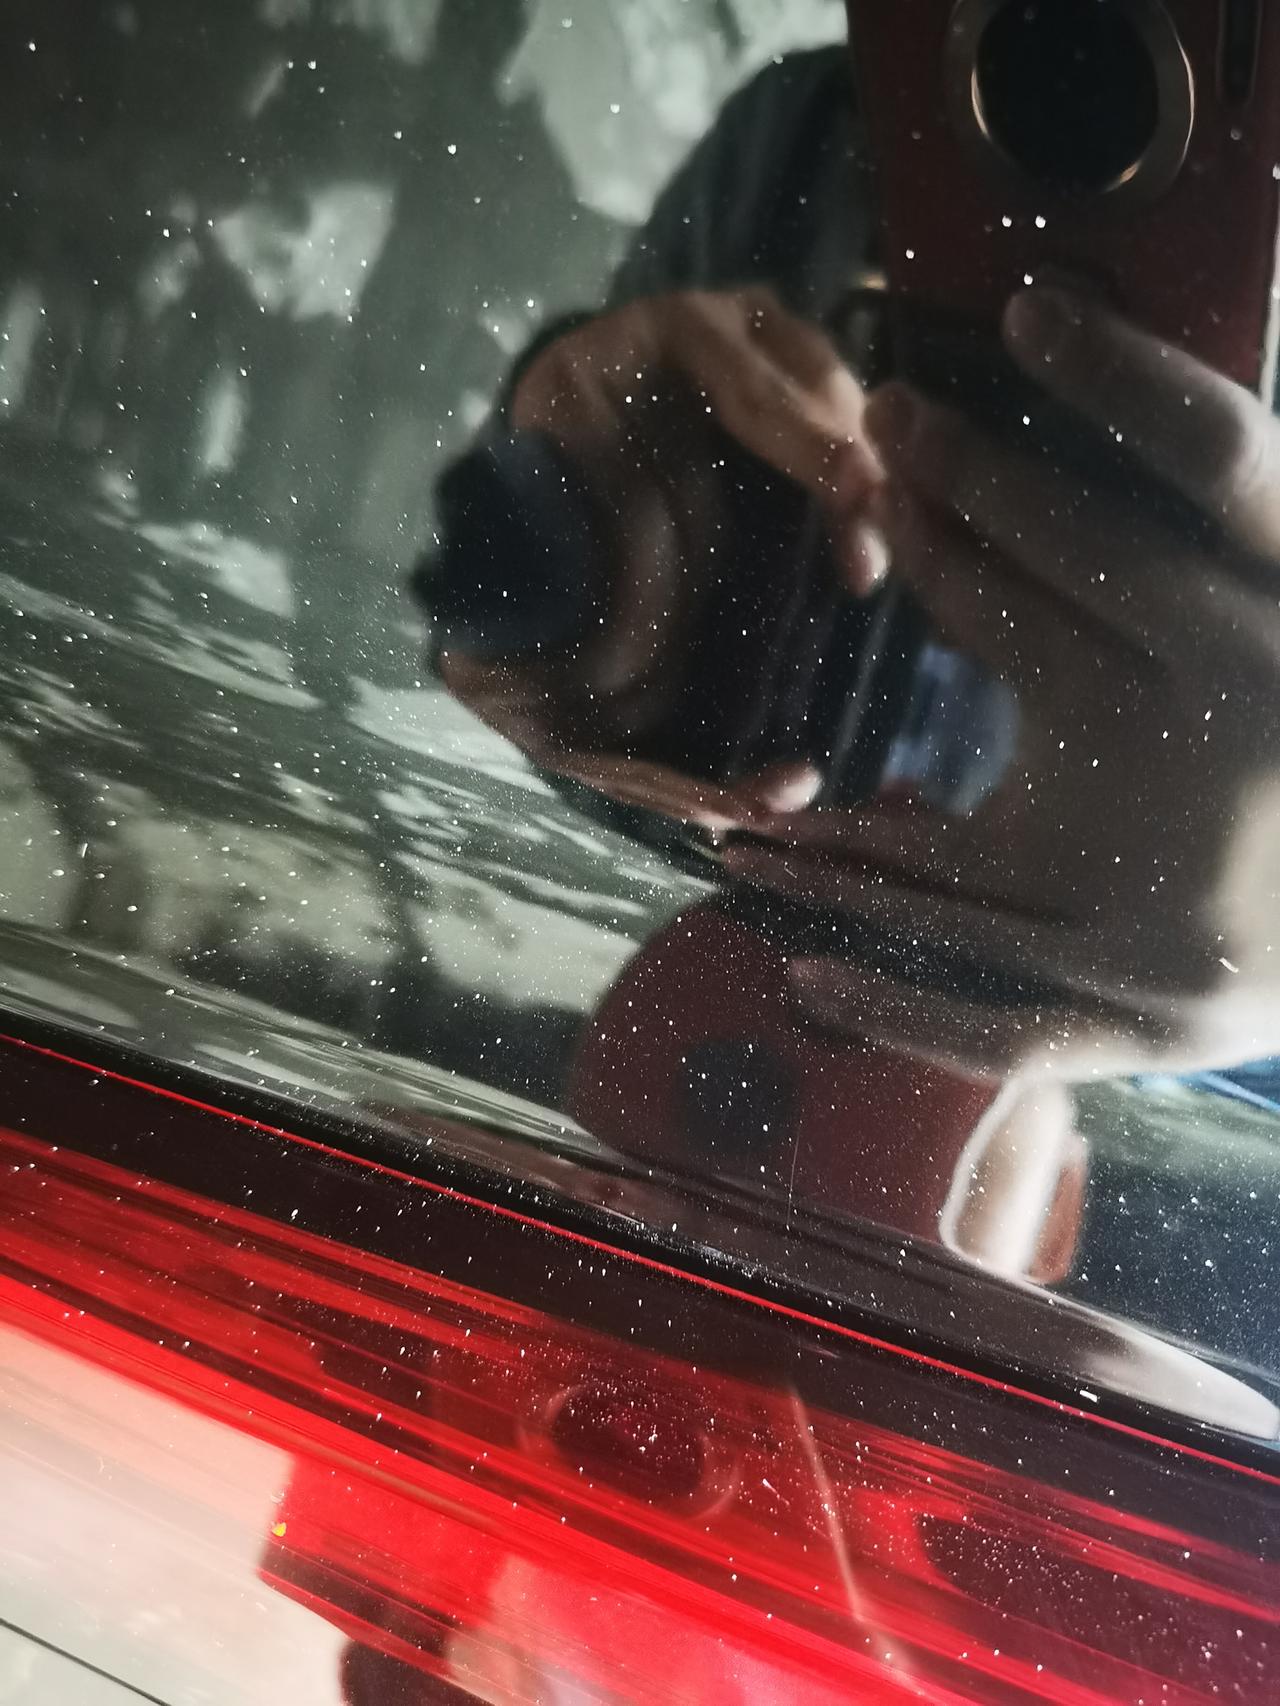 凯迪拉克XT5 车窗、漆面上全是这种小白点，用指甲能扣下来，但是工作量太大…不知道是油漆还是树胶～有没有啥好办法处理干净